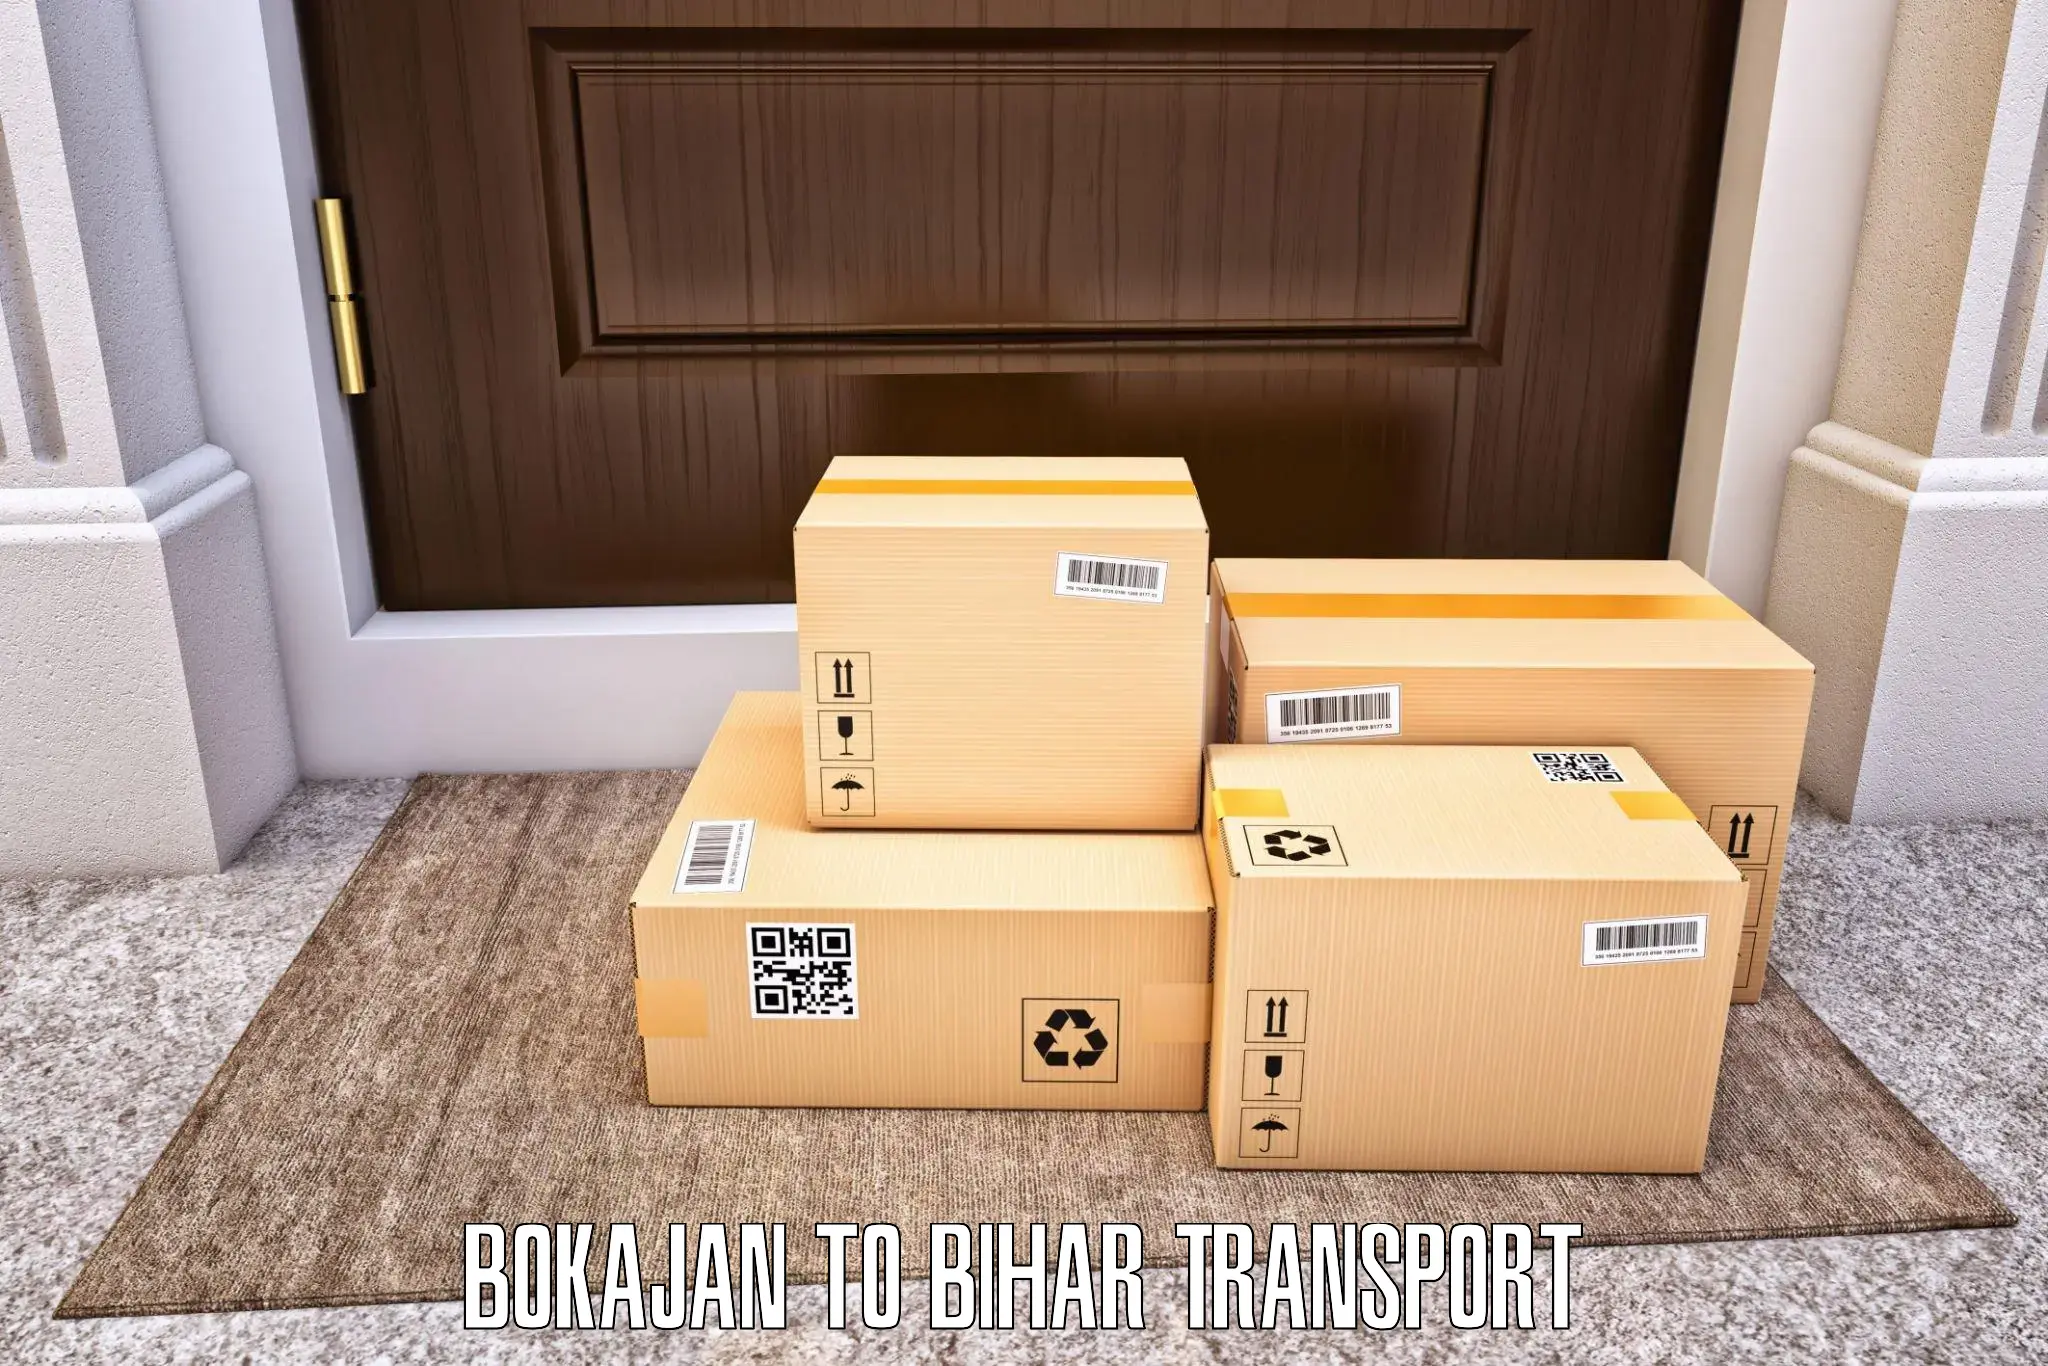 Nearest transport service Bokajan to Gaya